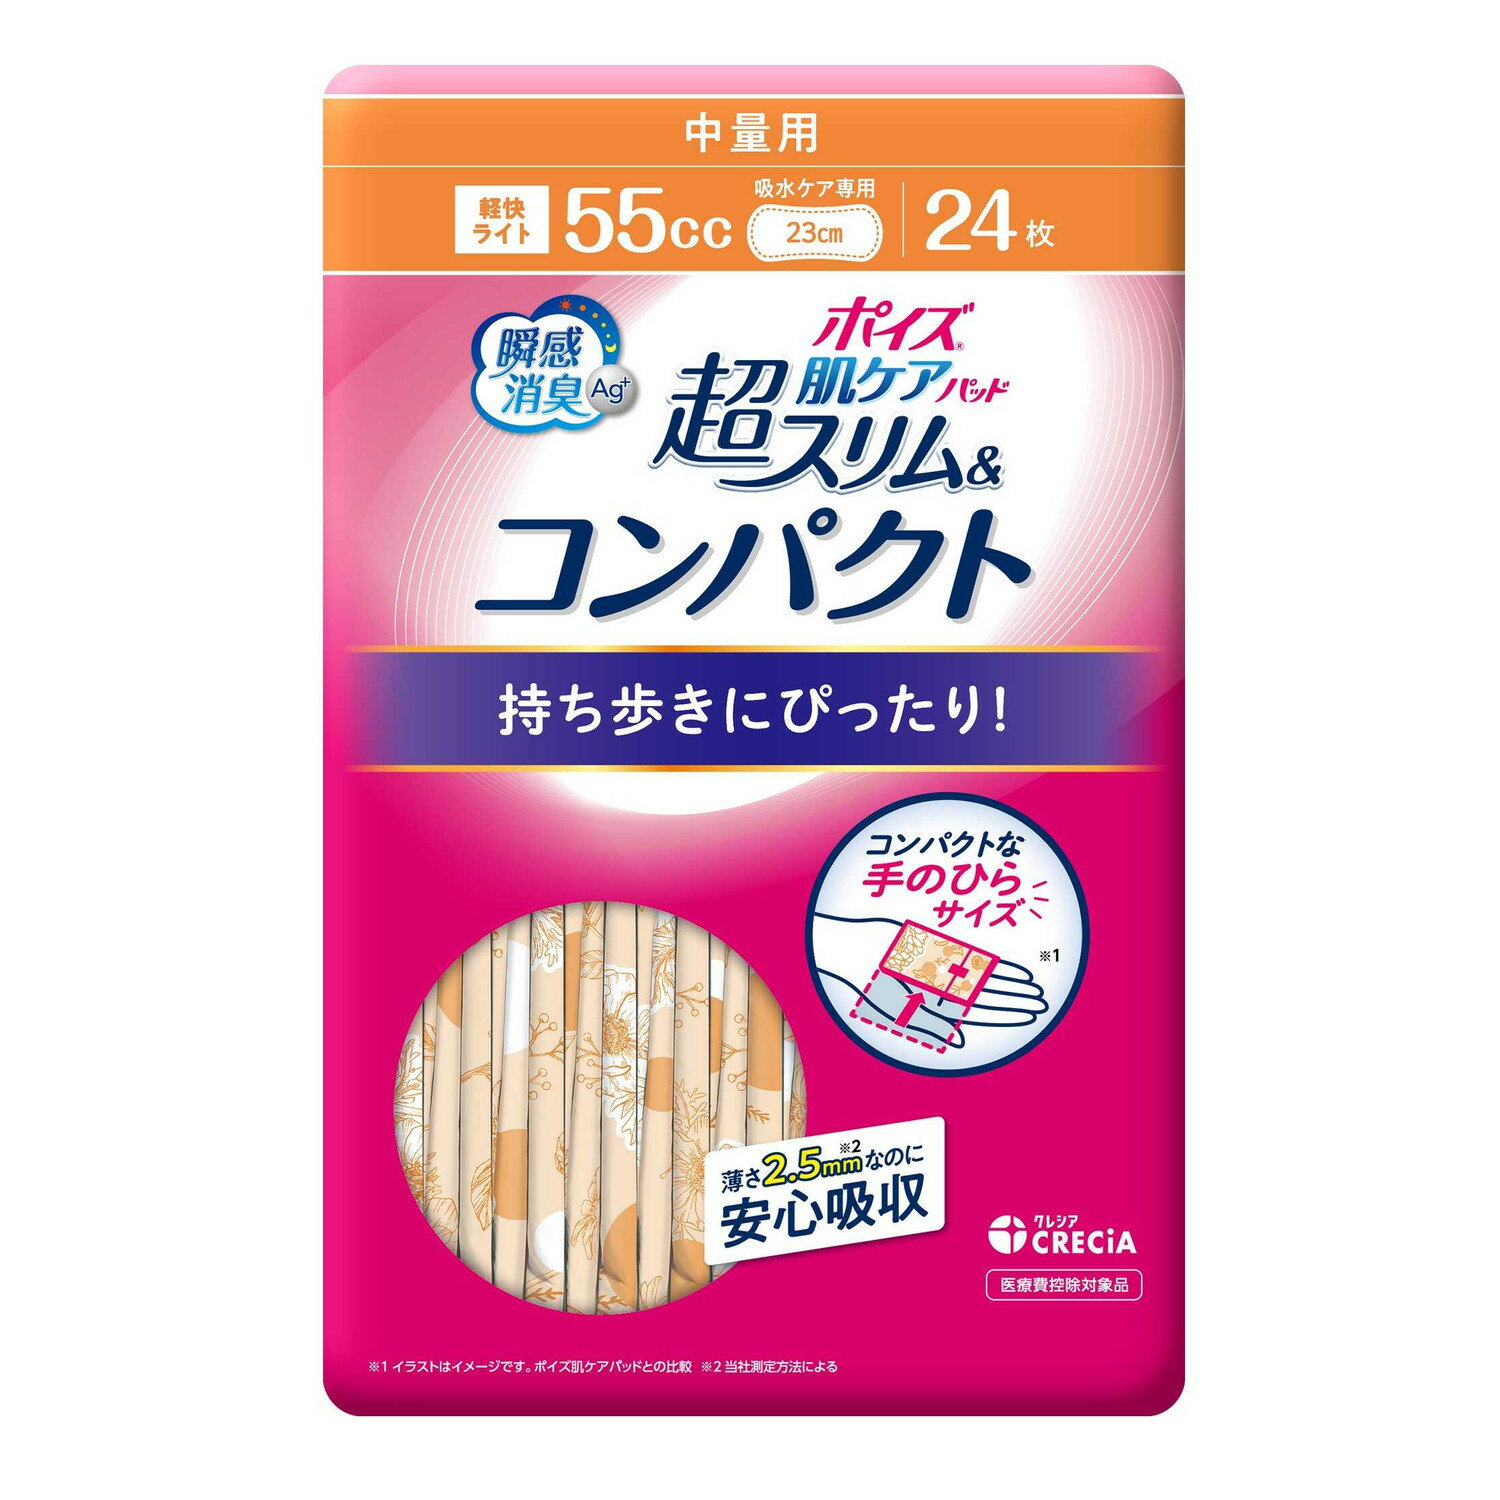 日本製紙クレシア ポイズ肌ケアパット 超スリム ...の商品画像